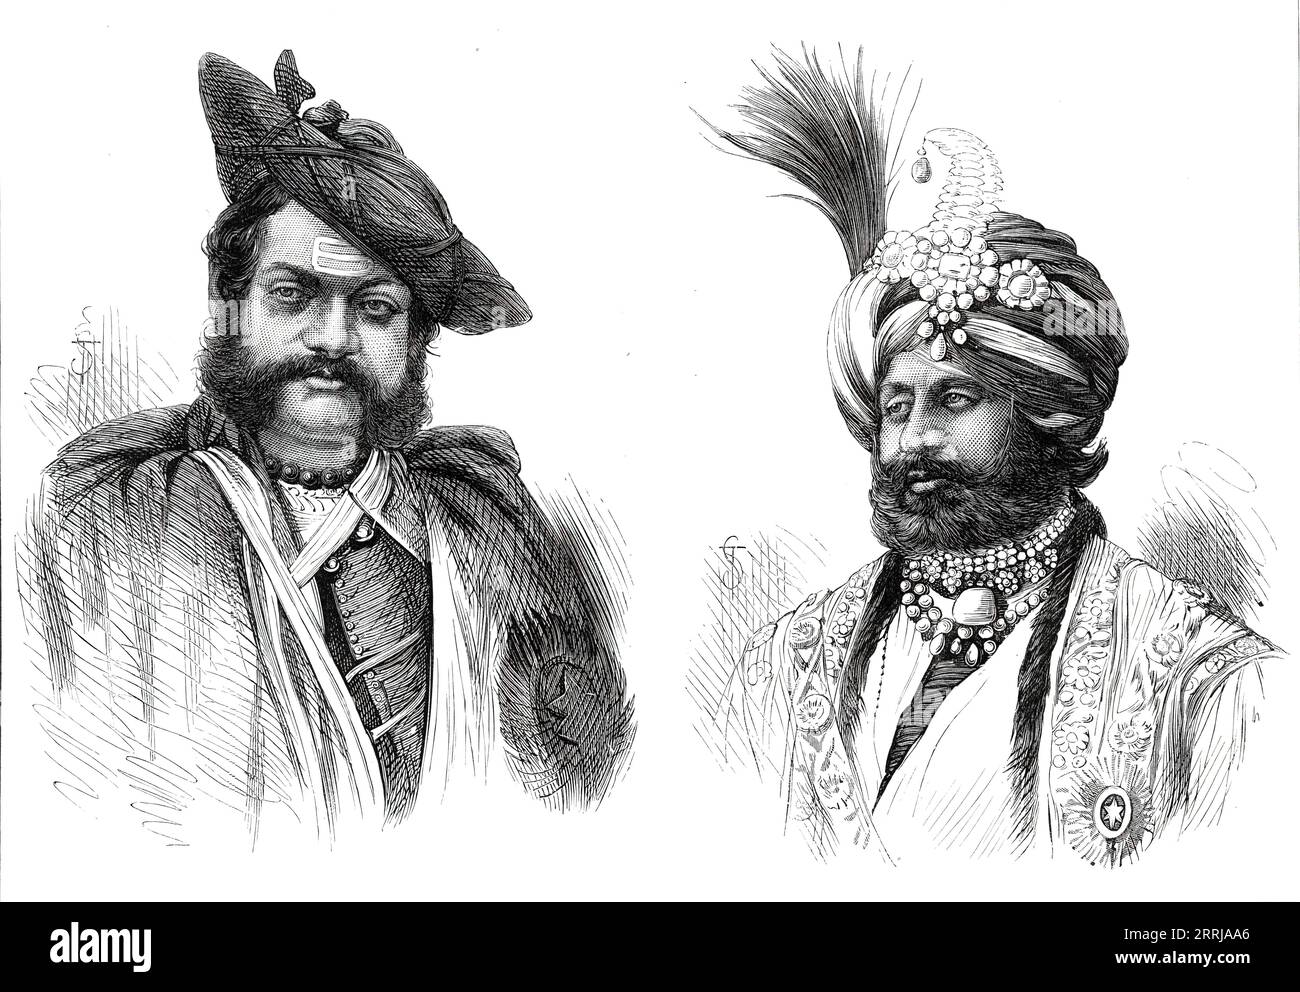 Der Maharajah Scindia von Gwalior; der Maharajah von Kaschmir, 1876. "Es ist zu beachten, dass die Mahratta-Potentaten Westindiens jetzt wertvolle Verbündete der britischen Regierung sind. Scindia wurde im Sepoy-Krieg von 1858 durch eine Rebellion unter der Führung von Tantia Topee und der Ranee oder Dowager Princess of Jhansi auf Betreiben von Nana Sahib gestürzt. Er wurde von den Briten unter Sir Hugh Rose, dem heutigen Lord Strathnairn, restauriert, der die Felsenfestung von Gwalior stürmte. Aus Illustrated London News, 1876. Stockfoto